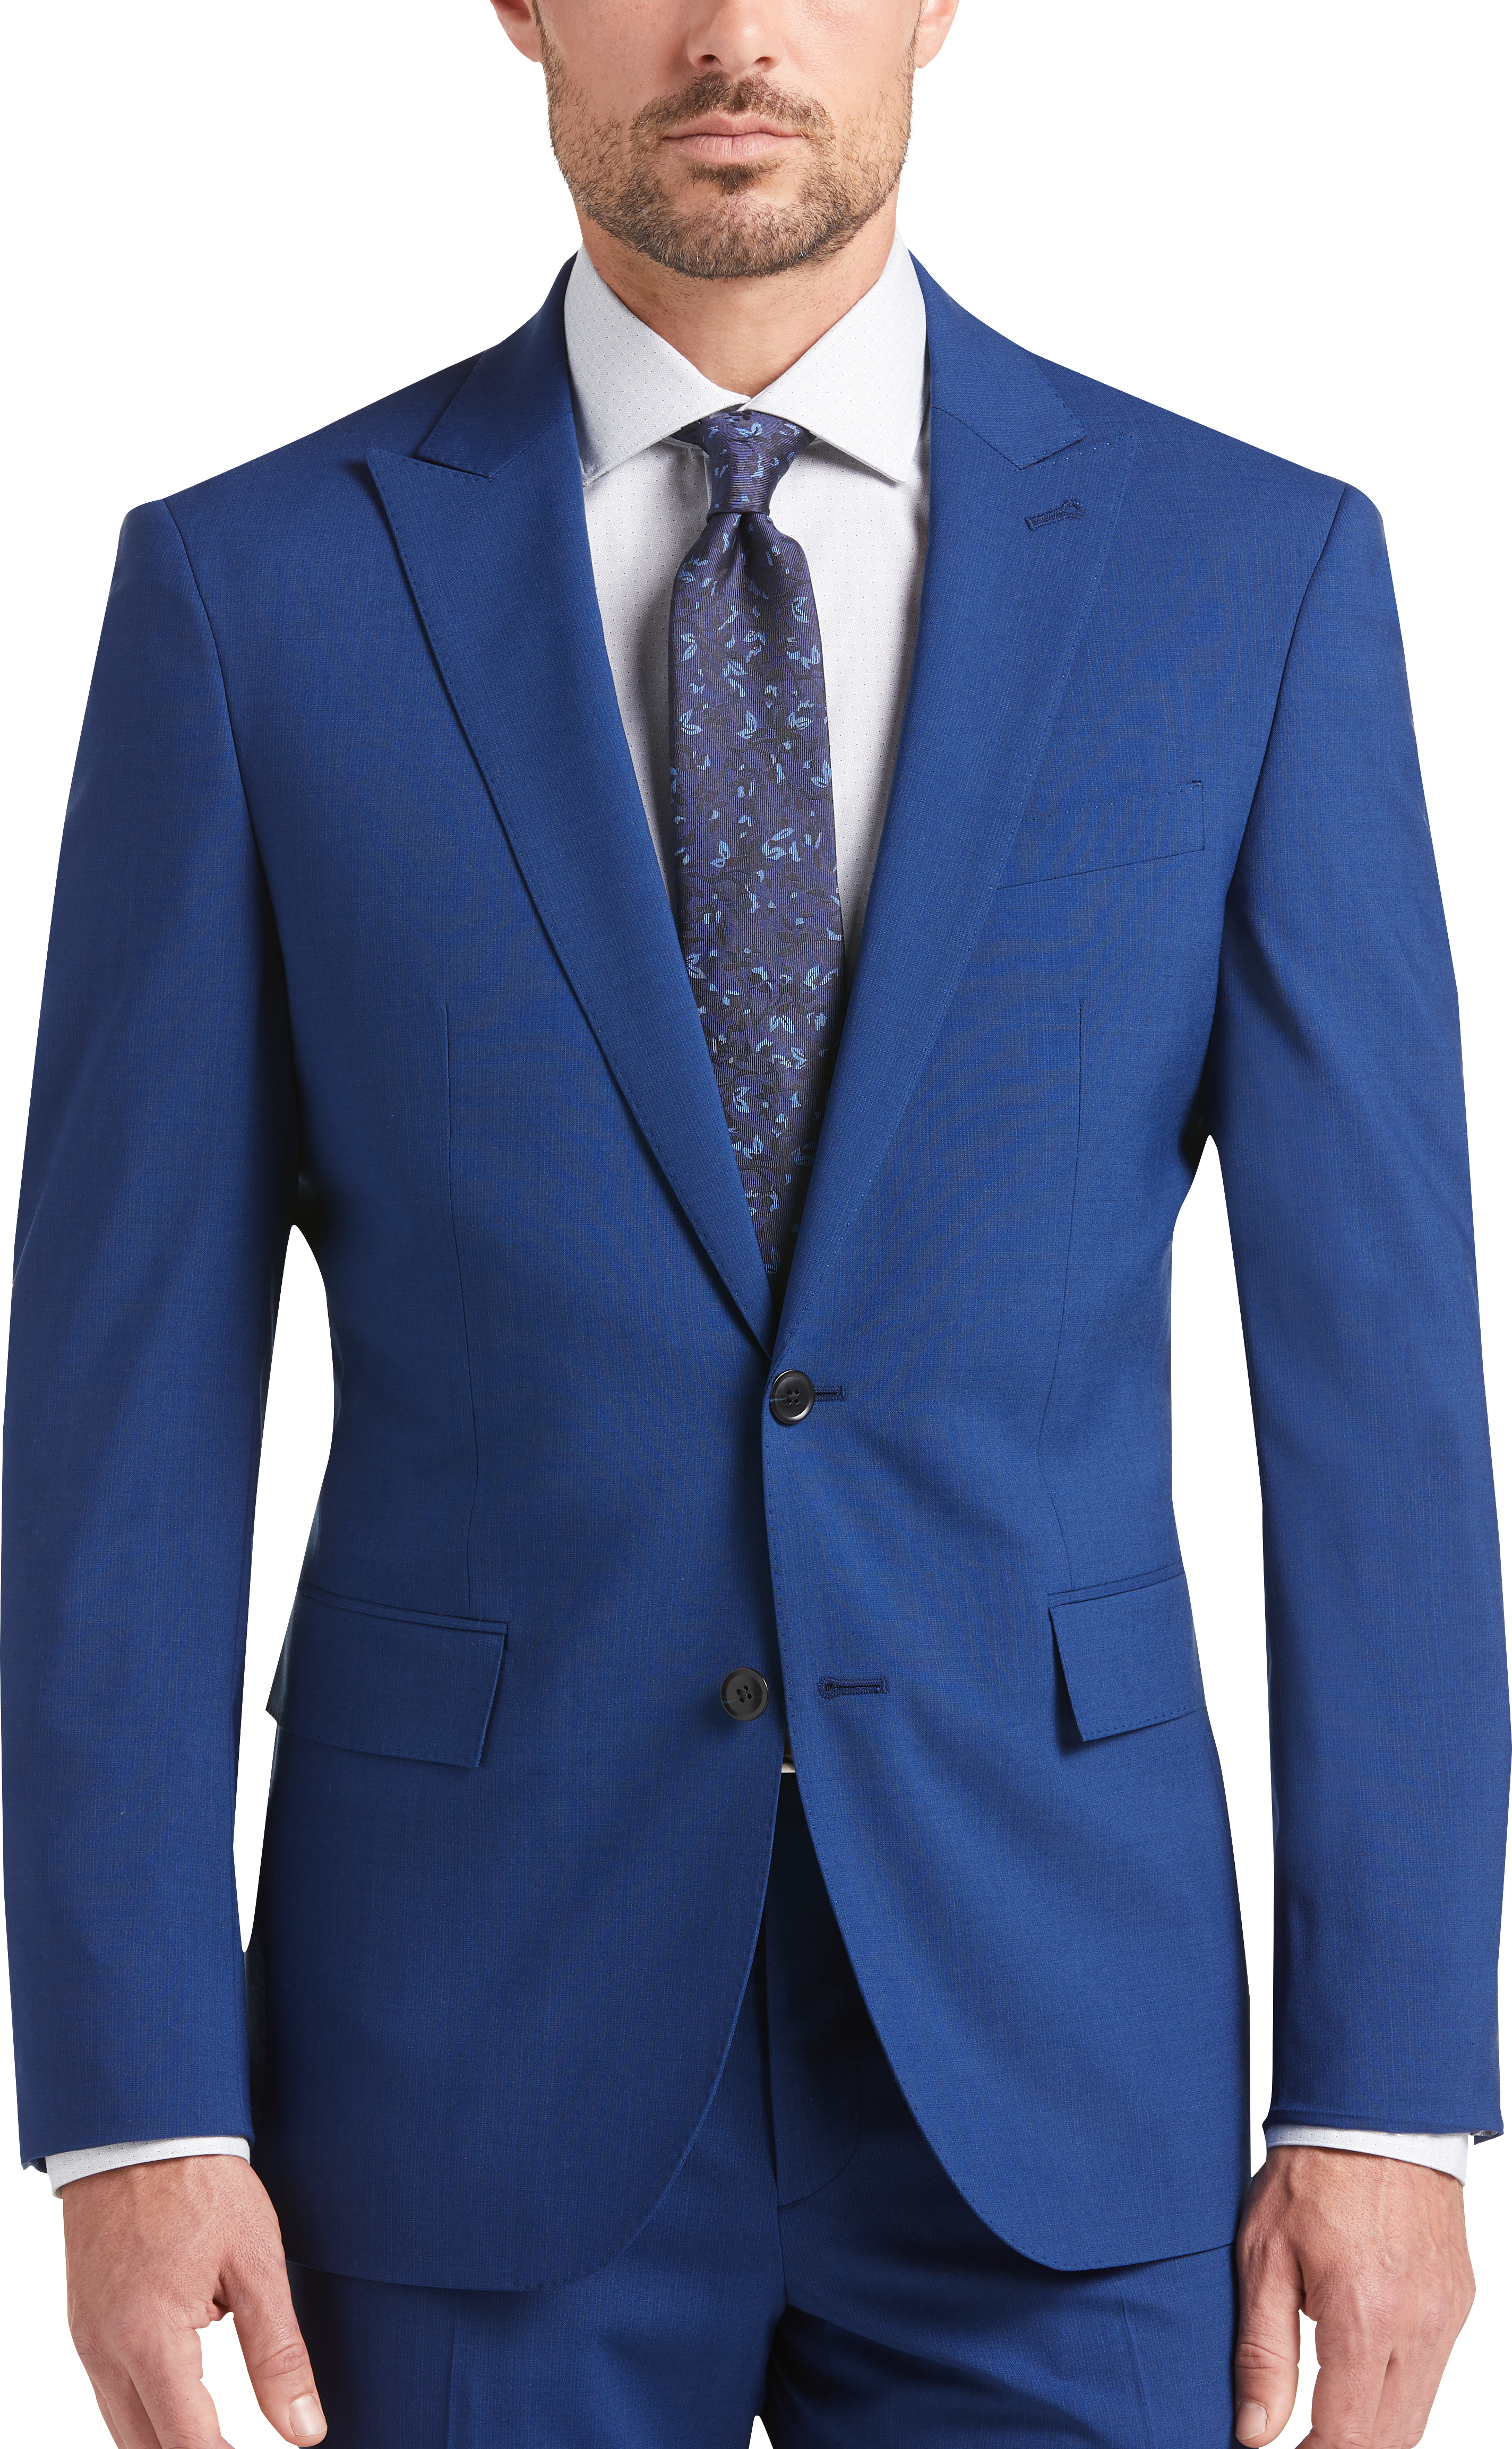 JOE Joseph Abboud Bright Blue Slim Fit Suit - Men's Sale | Men's Wearhouse